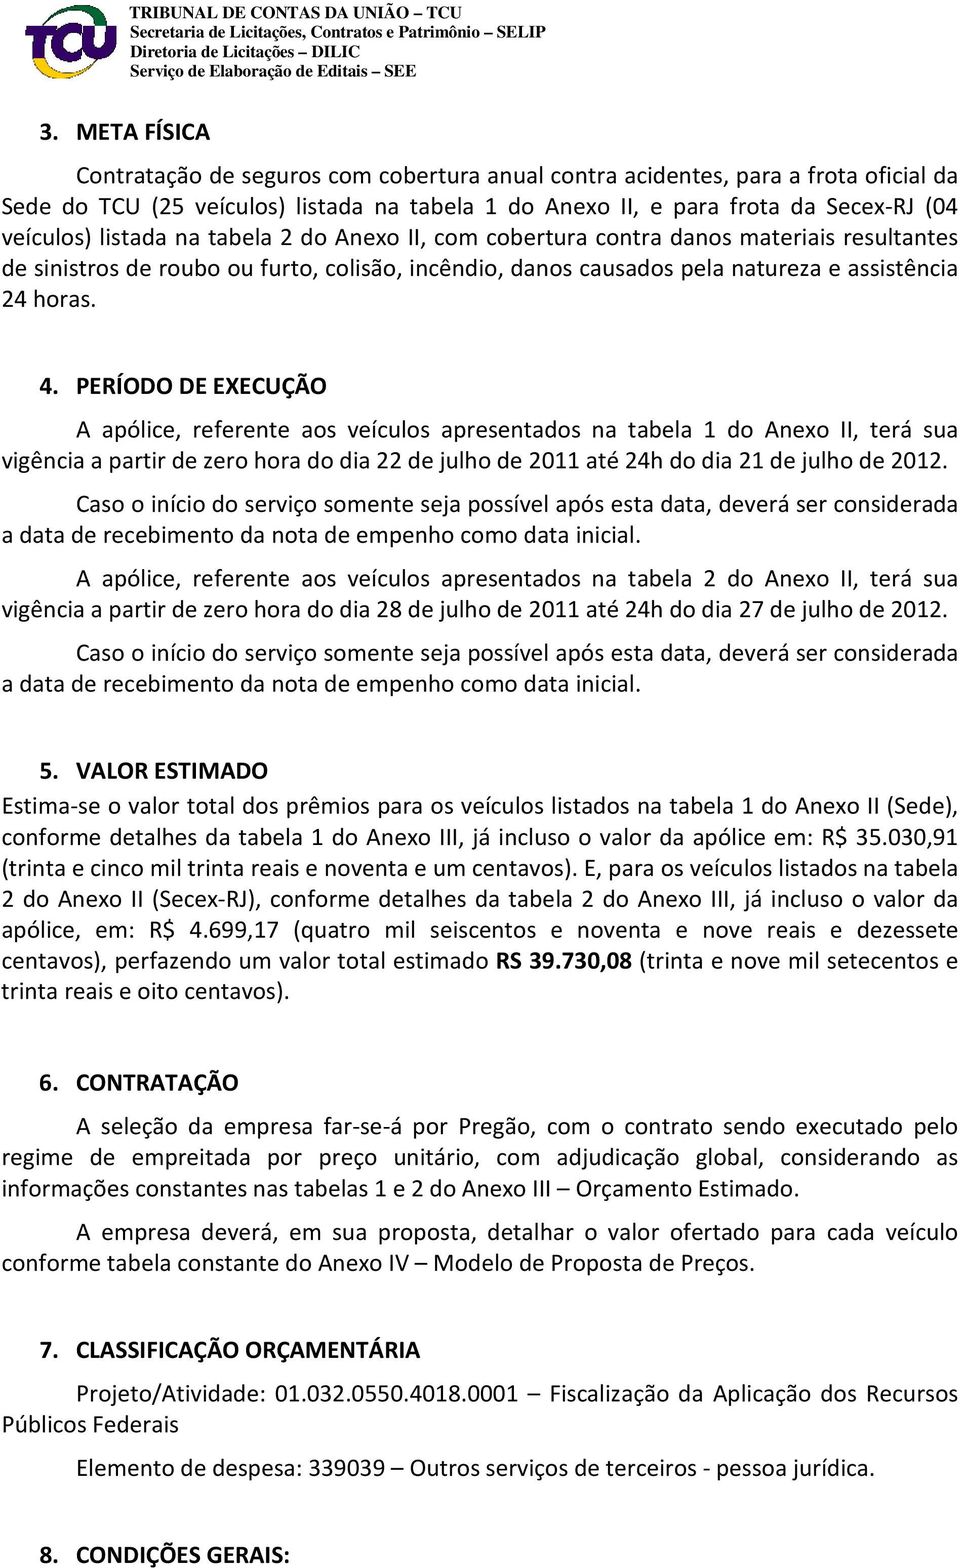 PERÍODO DE EXECUÇÃO A apólice, referente aos veículos apresentados na tabela 1 do Anexo II, terá sua vigência a partir de zero hora do dia 22 de julho de 2011 até 24h do dia 21 de julho de 2012.